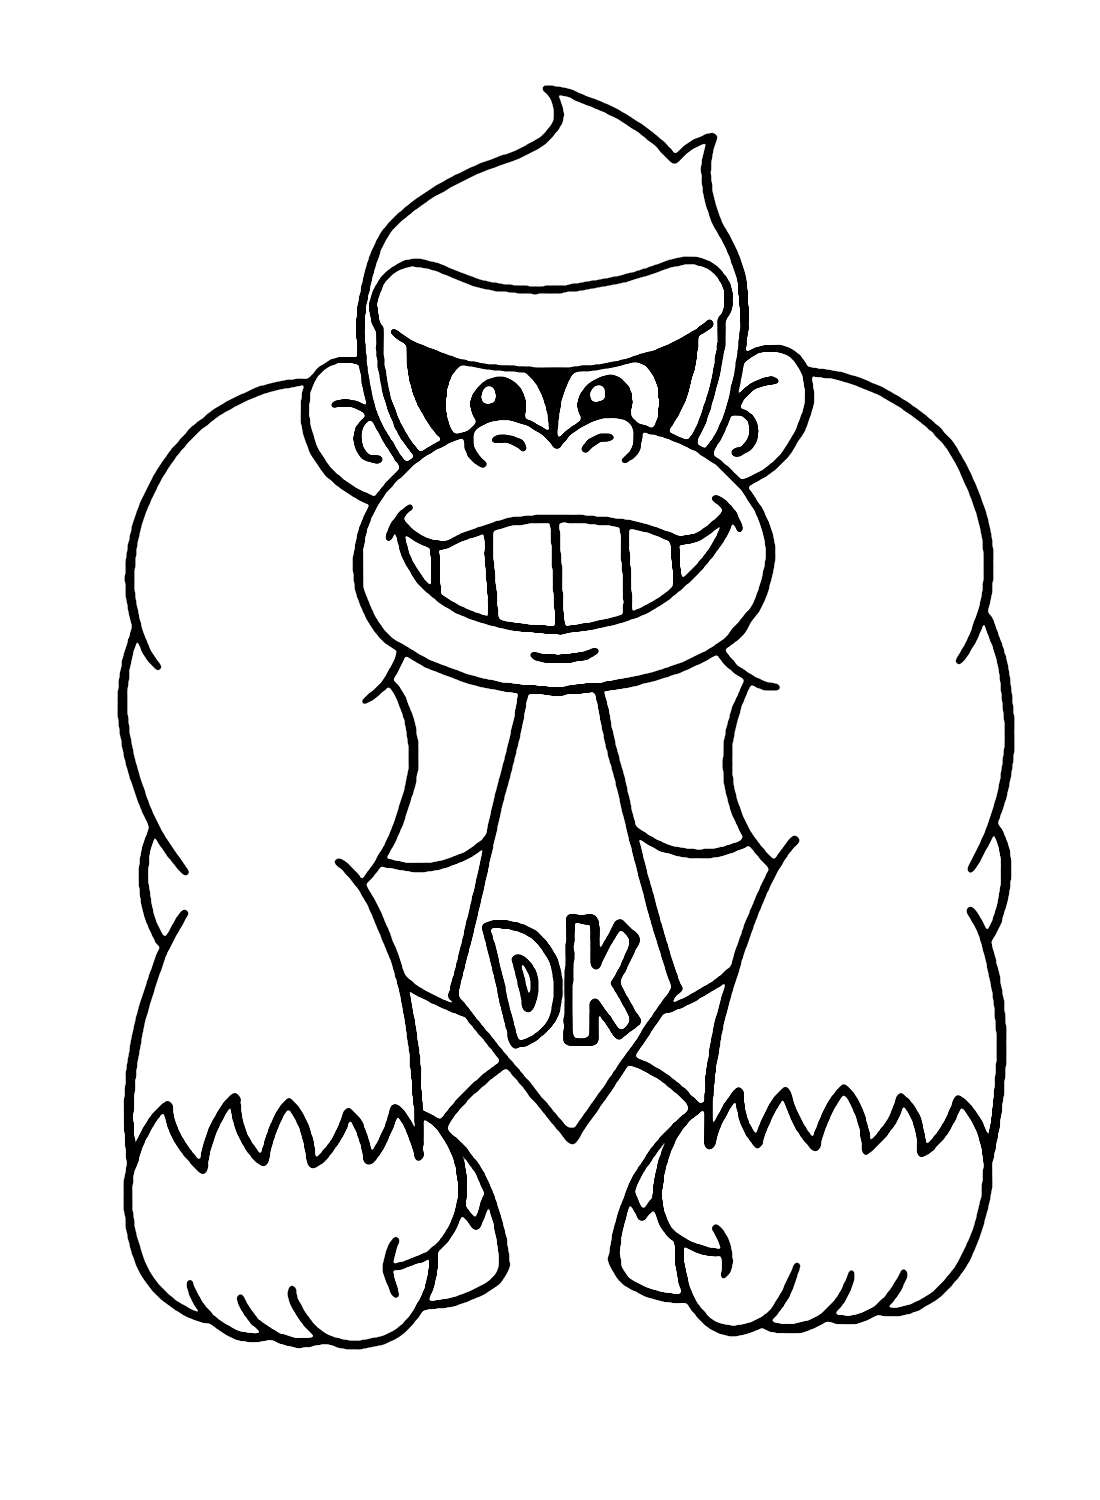 Niedlicher Donkey Kong von Donkey Kong